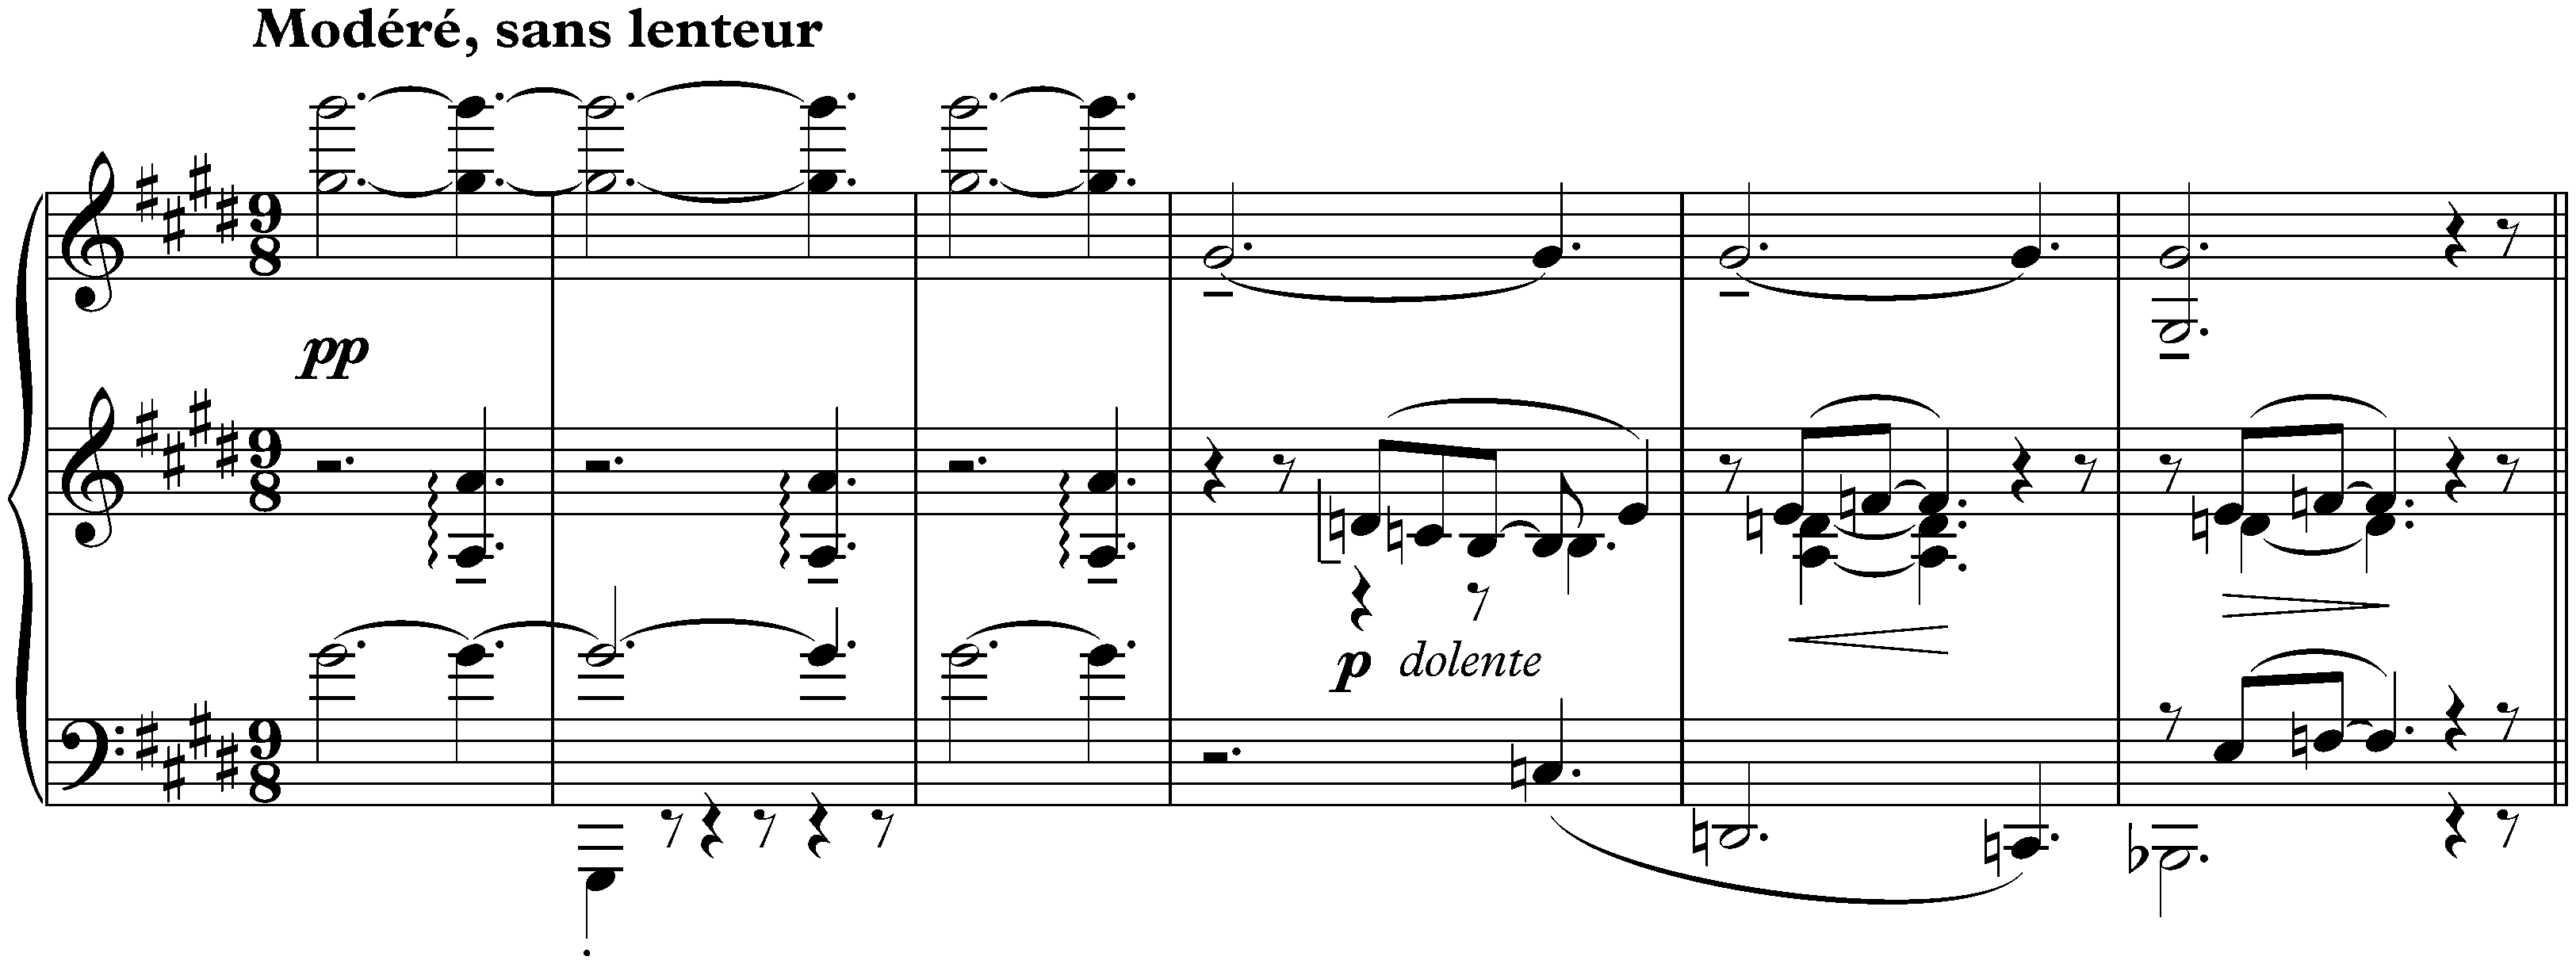 Douze Études; 10. Pour les sonorités opposées